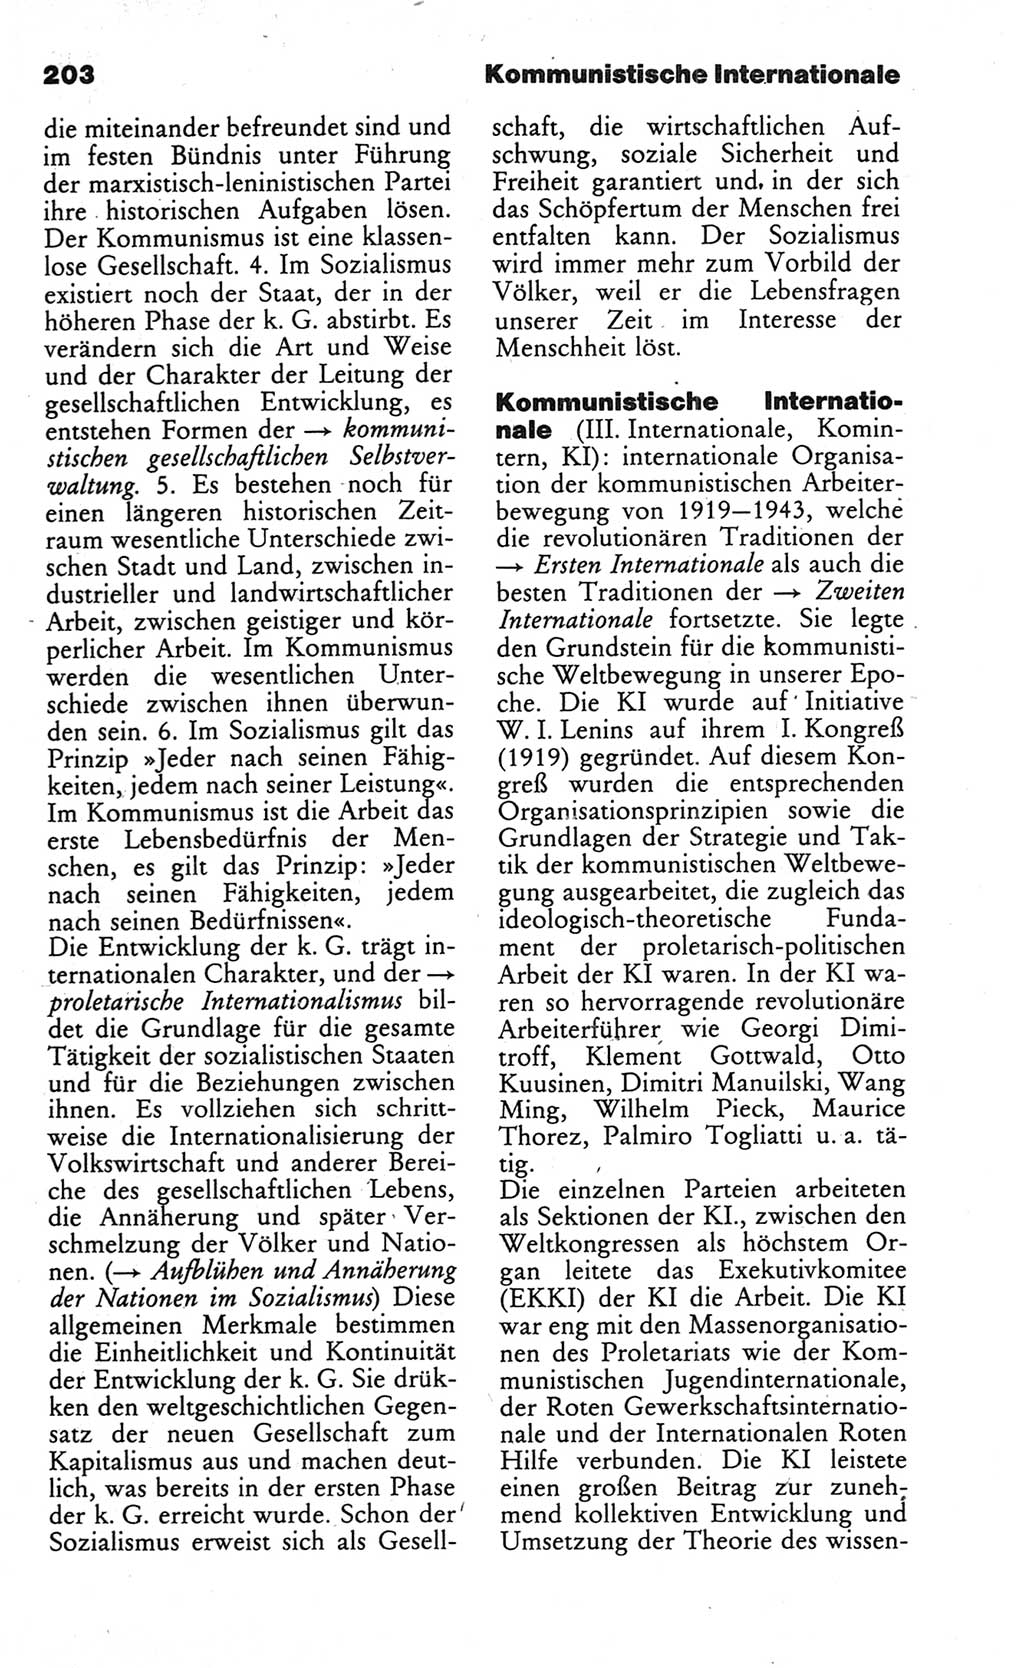 Wörterbuch des wissenschaftlichen Kommunismus [Deutsche Demokratische Republik (DDR)] 1984, Seite 203 (Wb. wiss. Komm. DDR 1984, S. 203)